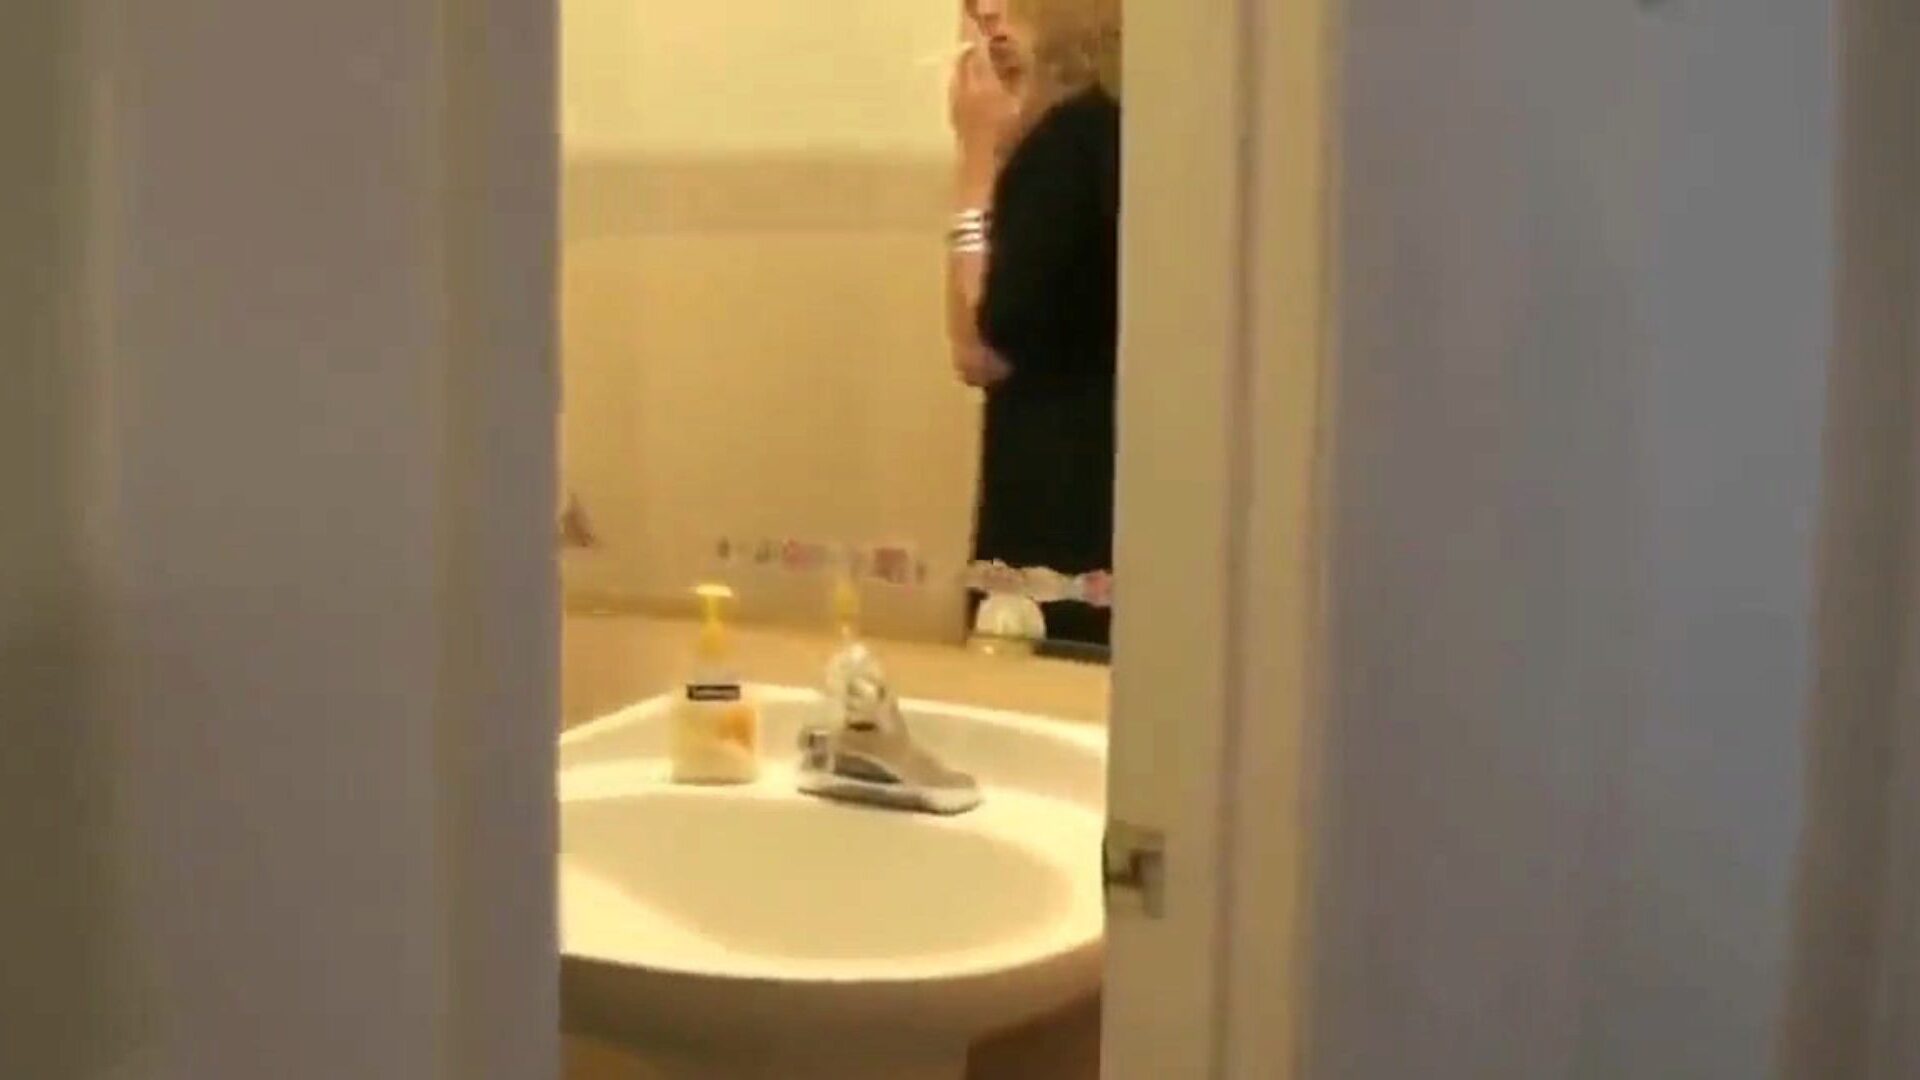 吸烟妈妈抓住儿子在她的间谍监视她在浴室里...观看吸烟妈妈抓住儿子在她的间谍监视浴室在xhamster角色扮演情节